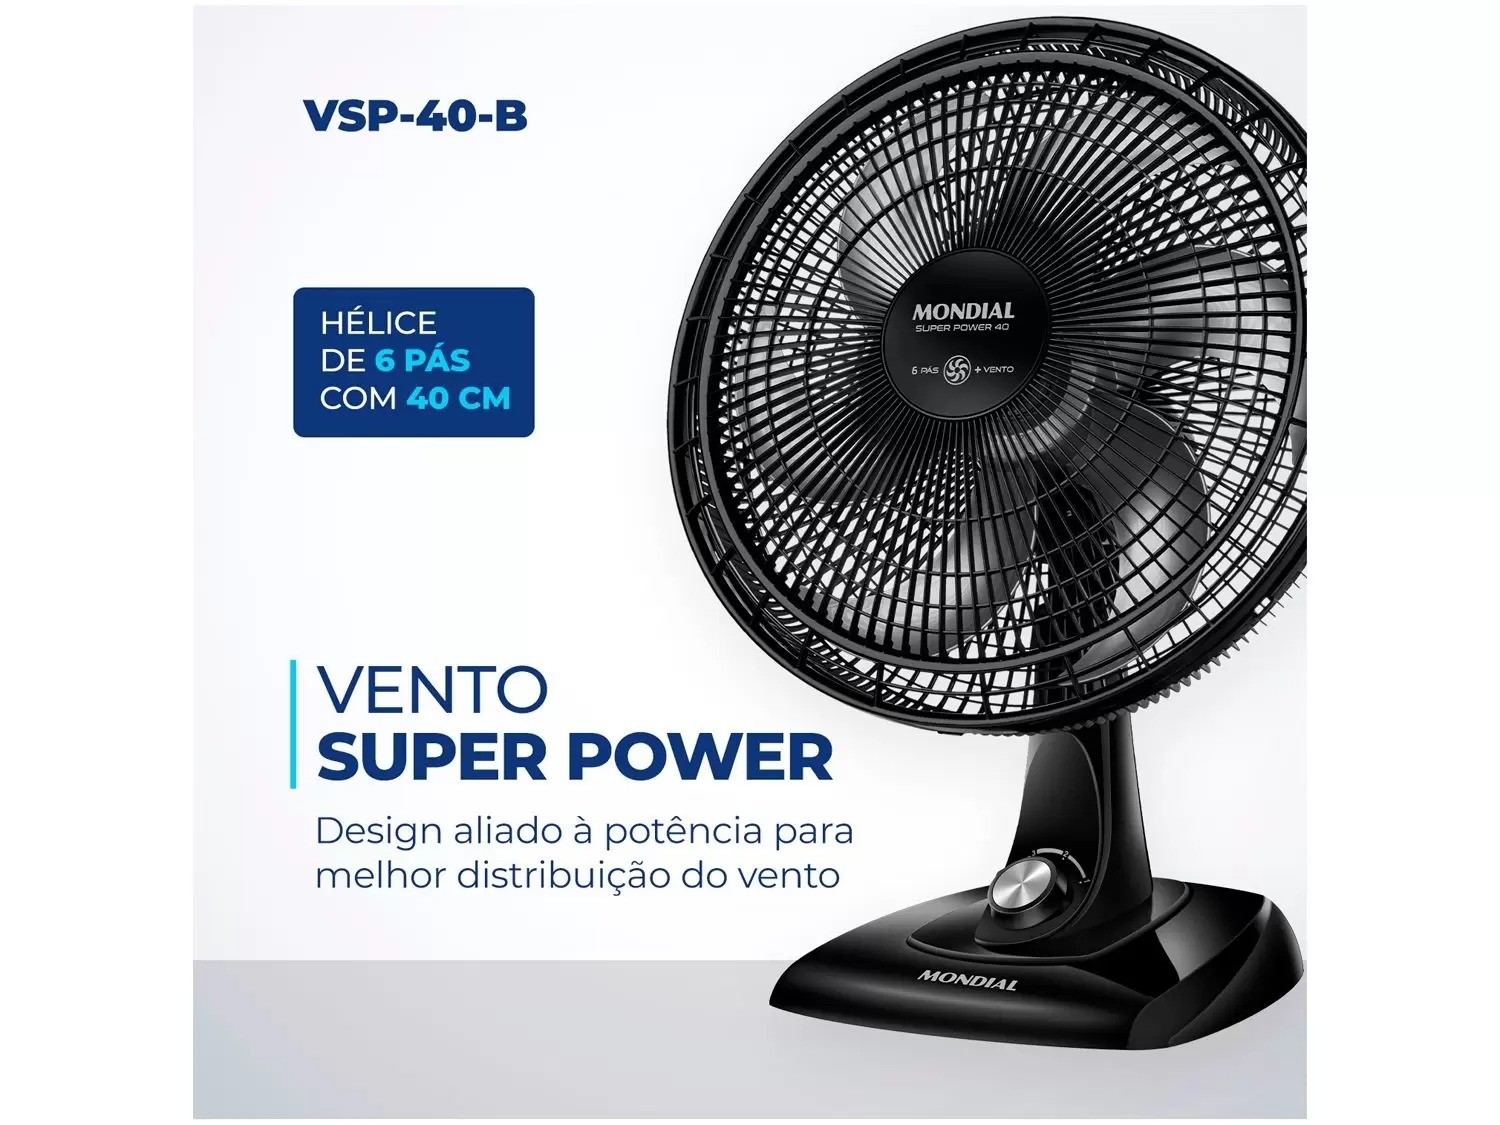 Ventilador 40cm VSP-40 Super Power 220V Mondial 